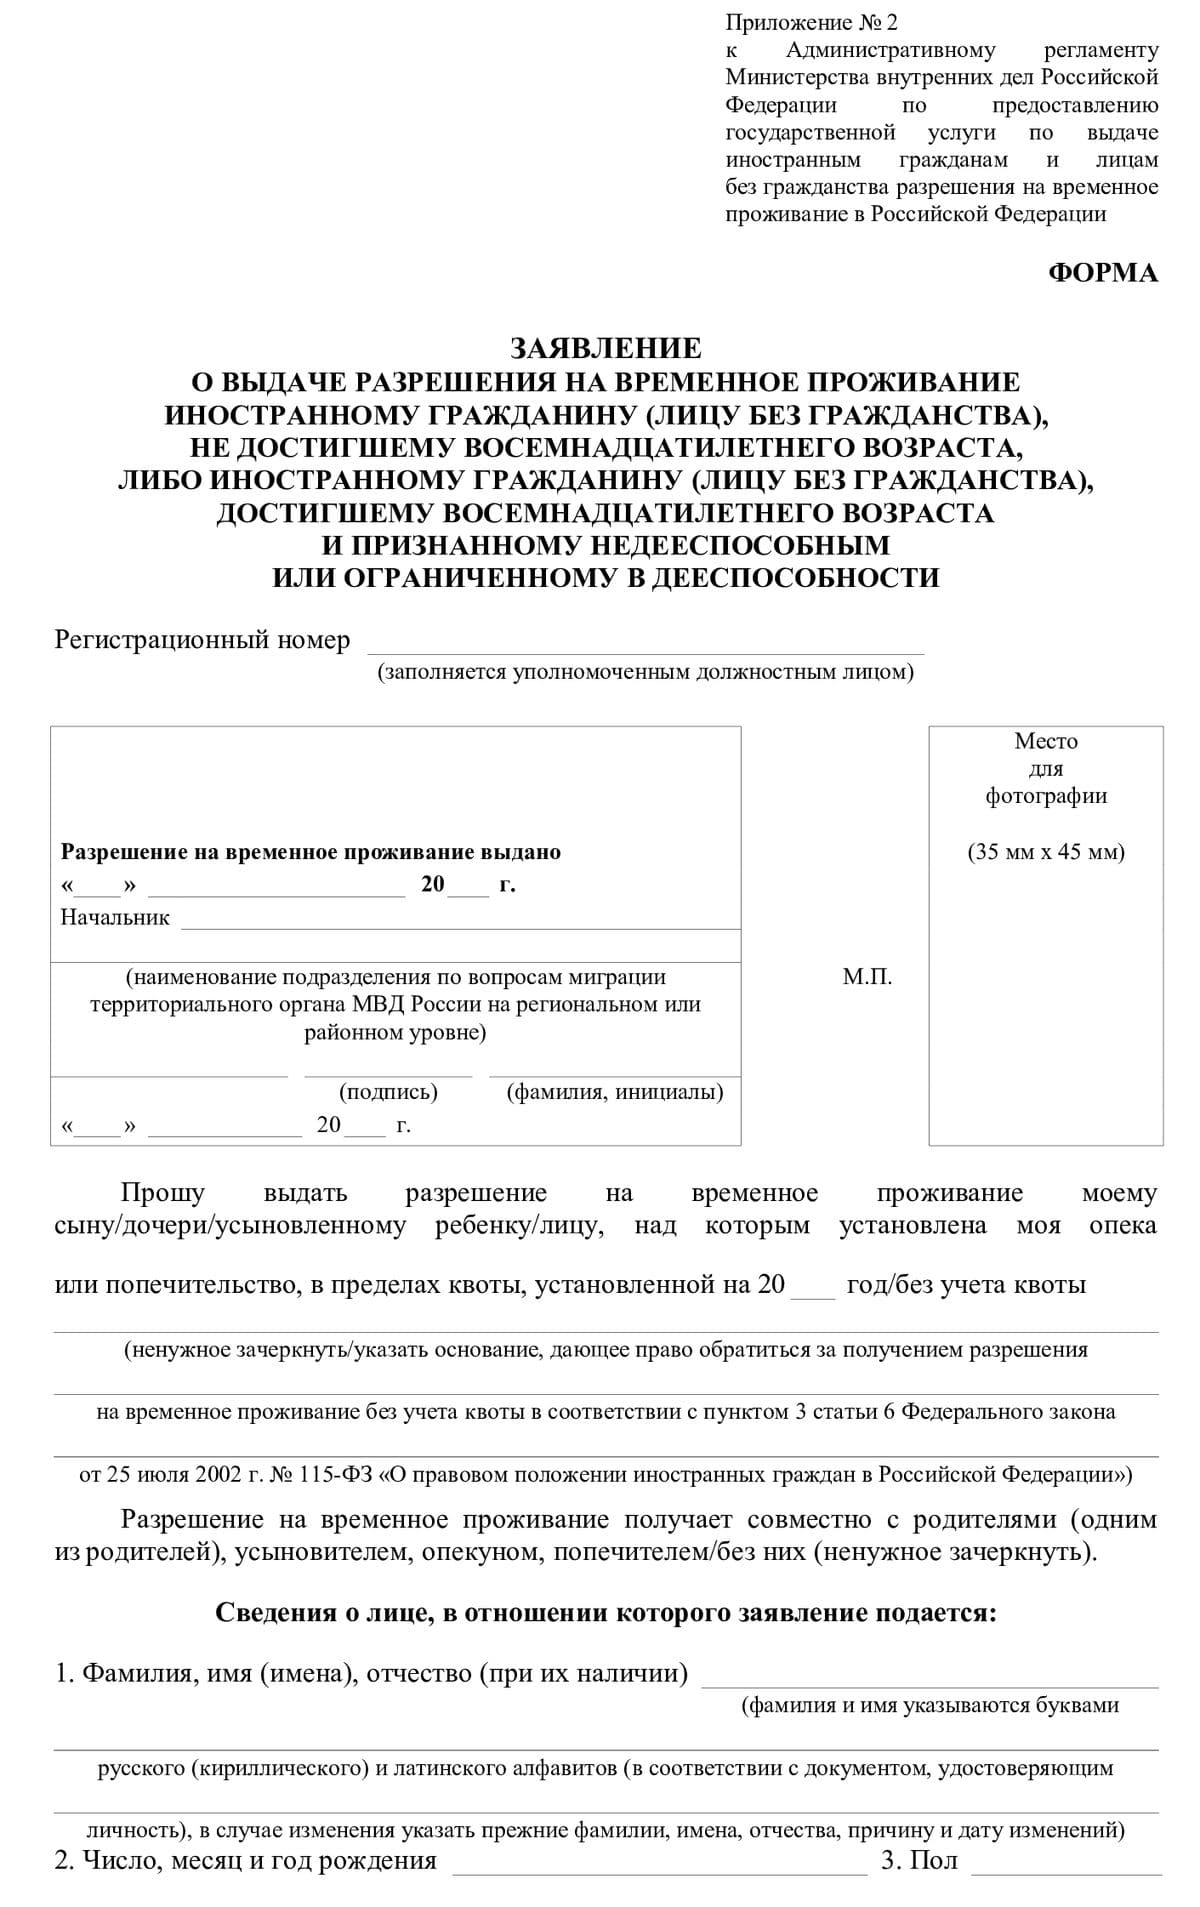 Список документов для деловой визы в россию